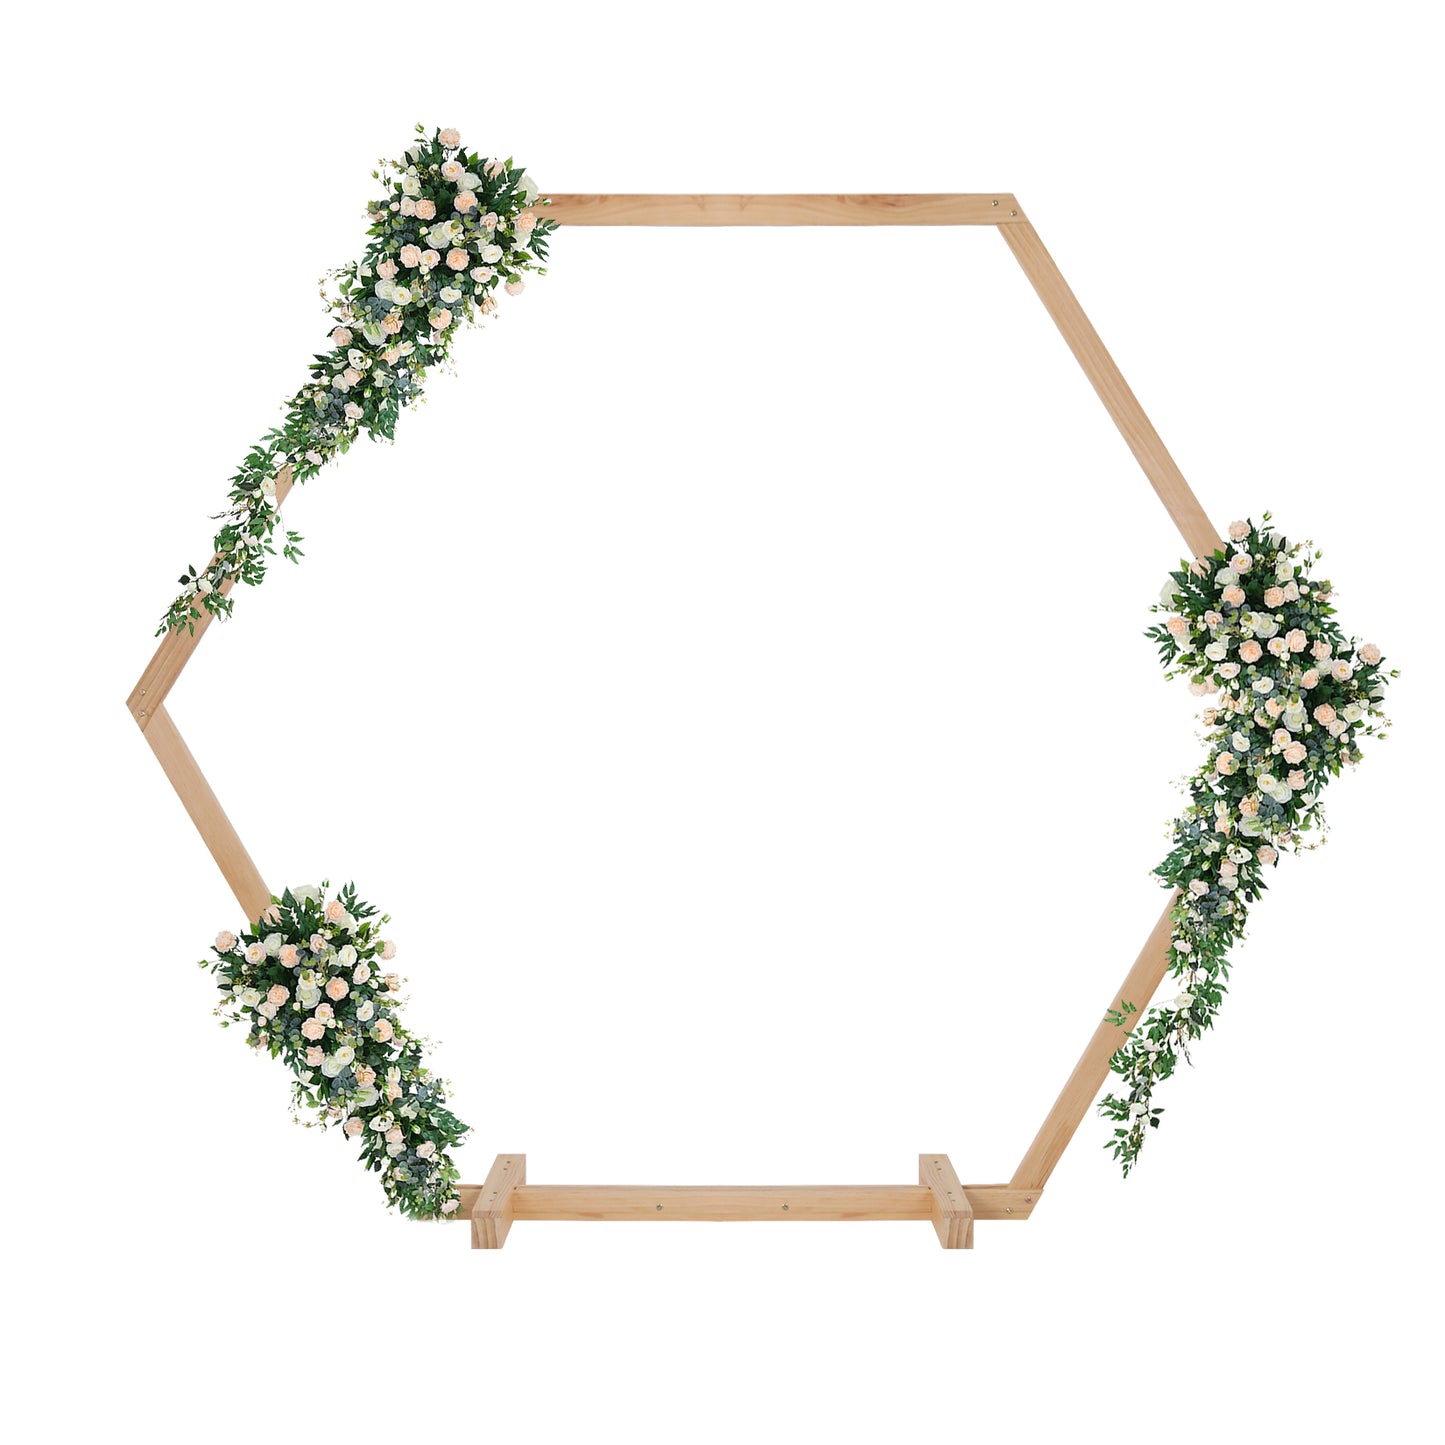 Hexagon Wooden Wedding Arch Stand